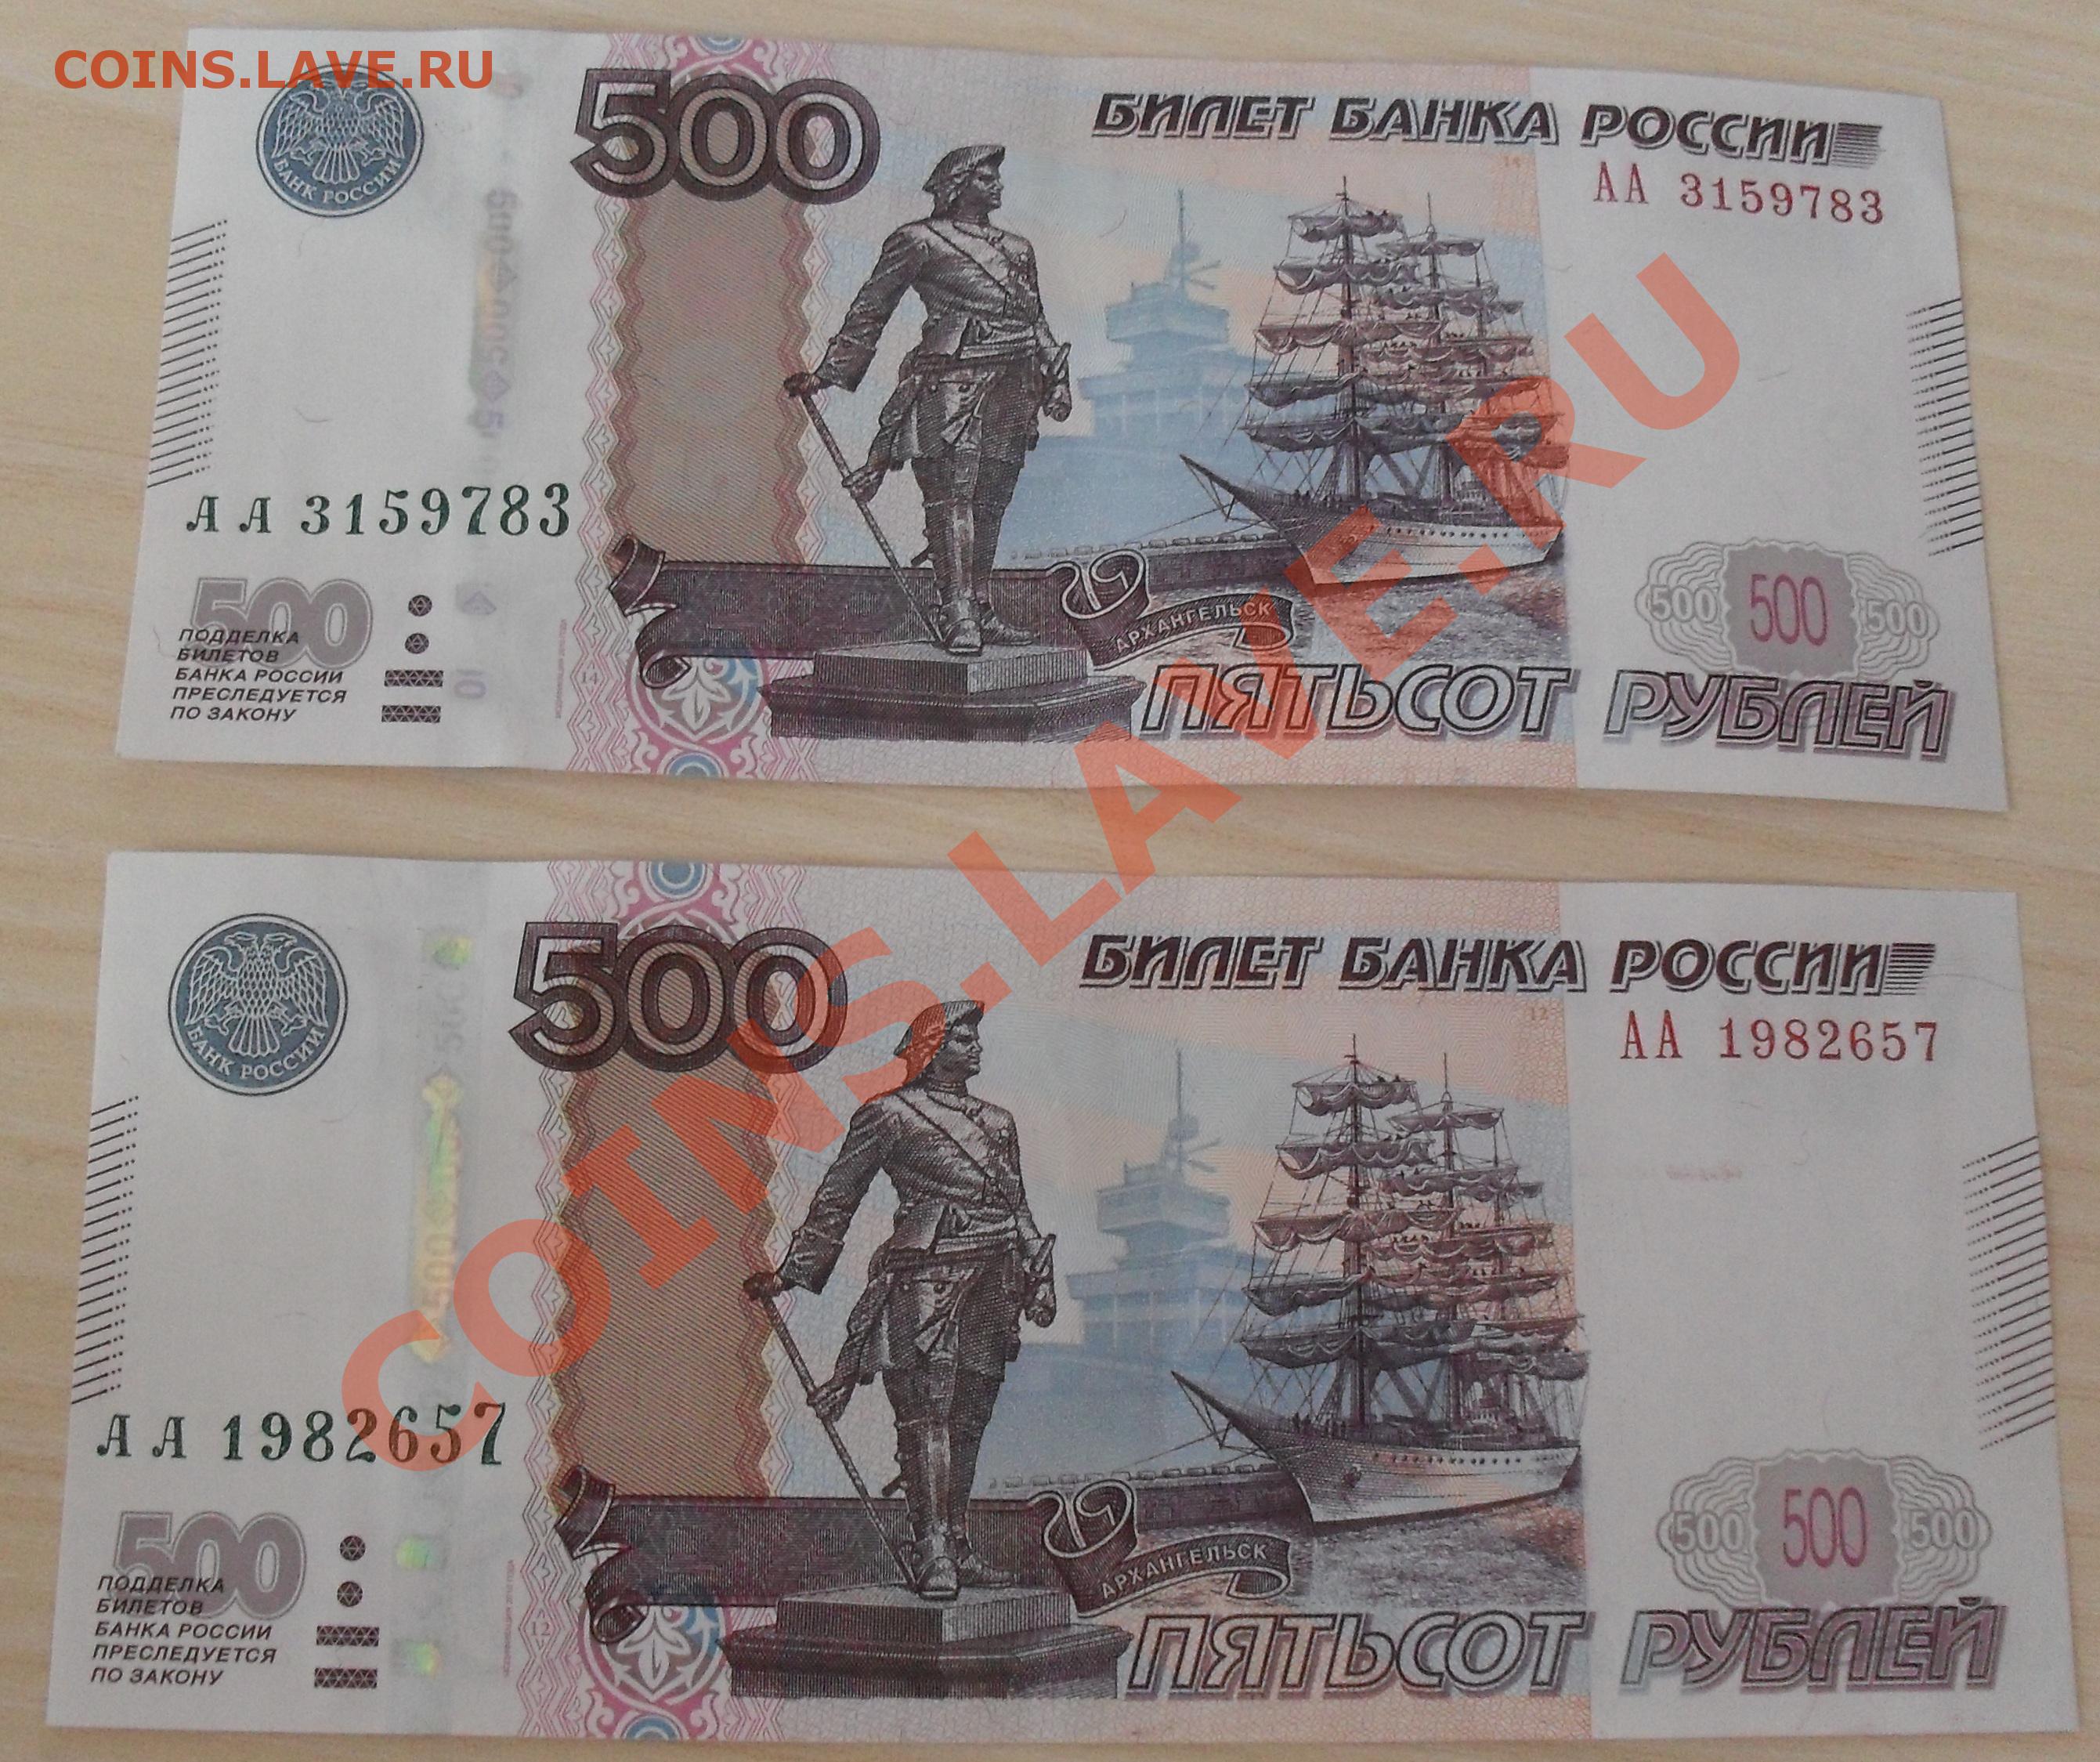 Как отличить 500. Фальшивые номера 500 р. 500 Рублей фальшивые от настоящих.